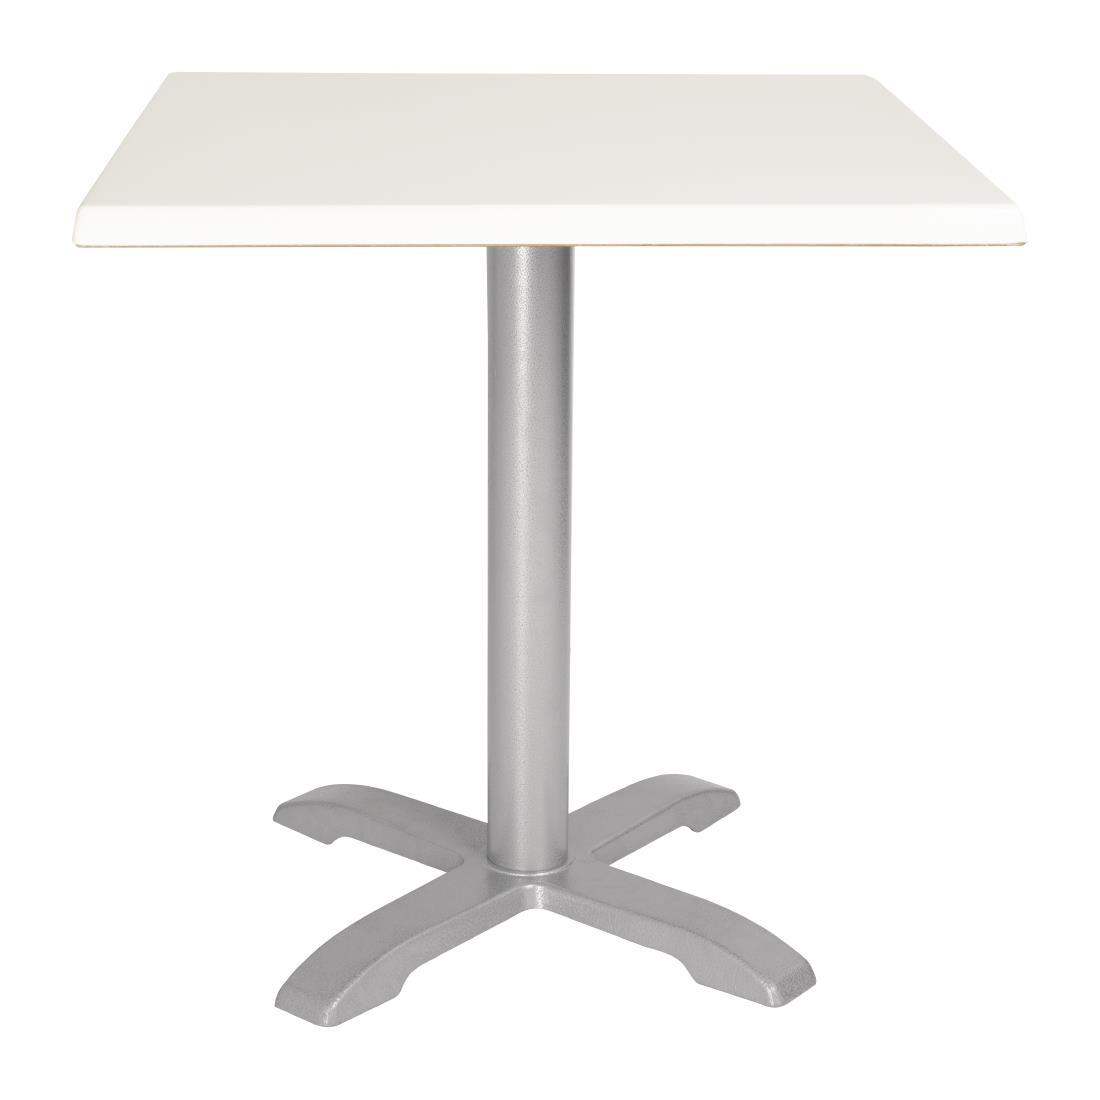 Bolero Pre-drilled Square Table Top White 700mm - GG641  - 2